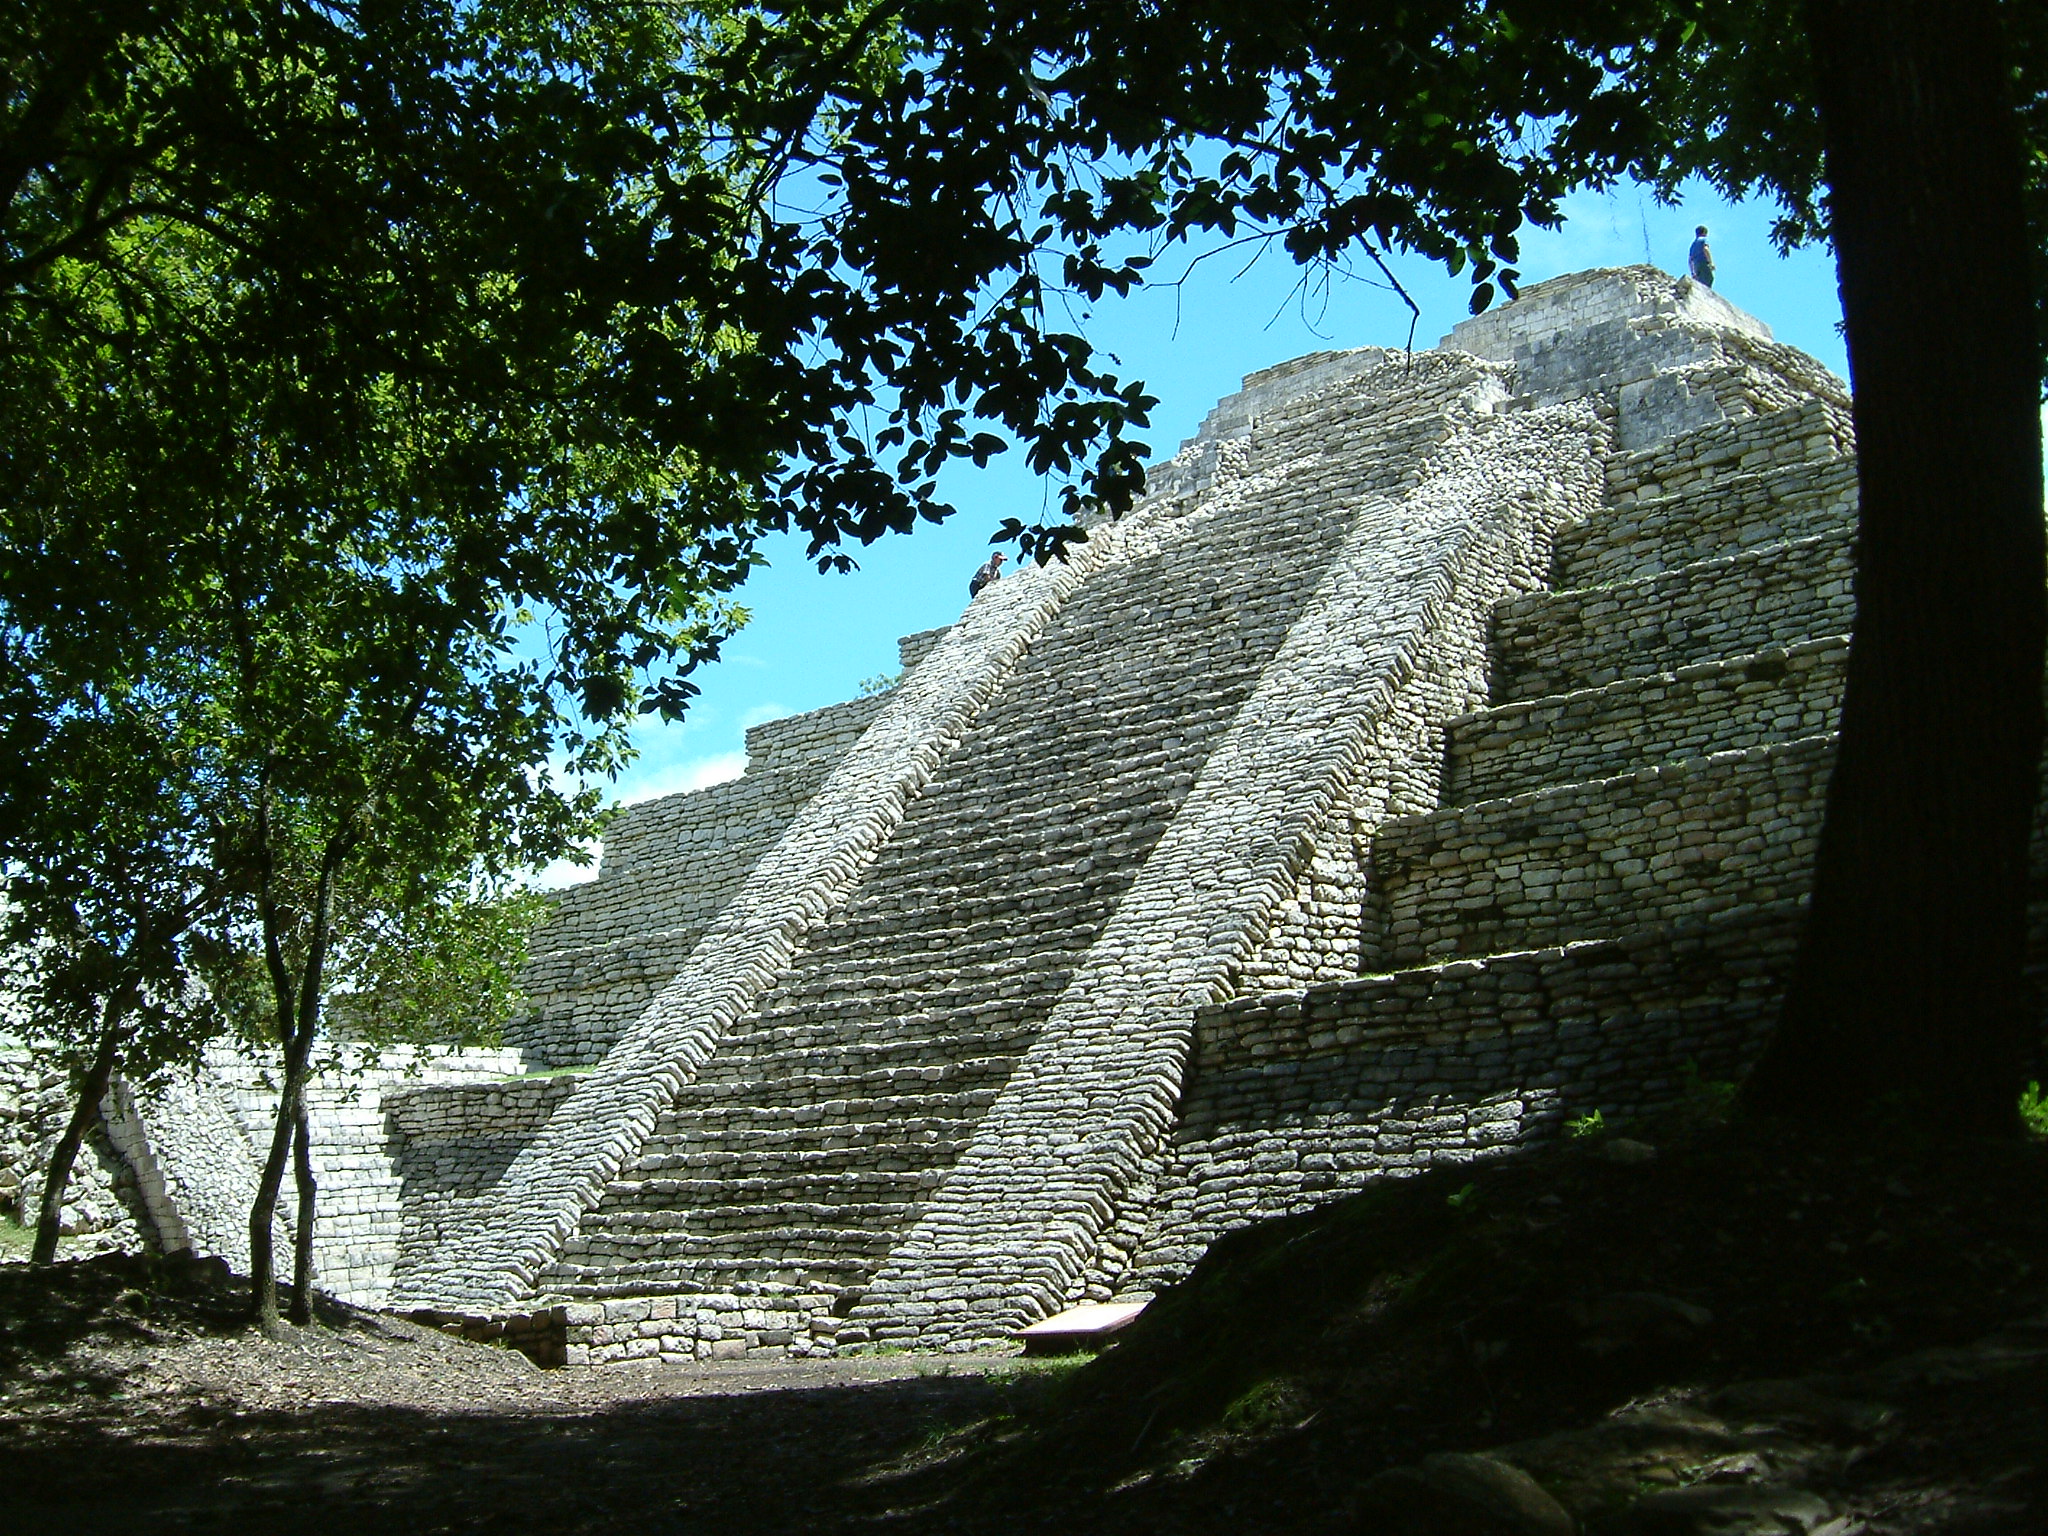 Tenam Puente, Chiapas, Mexico